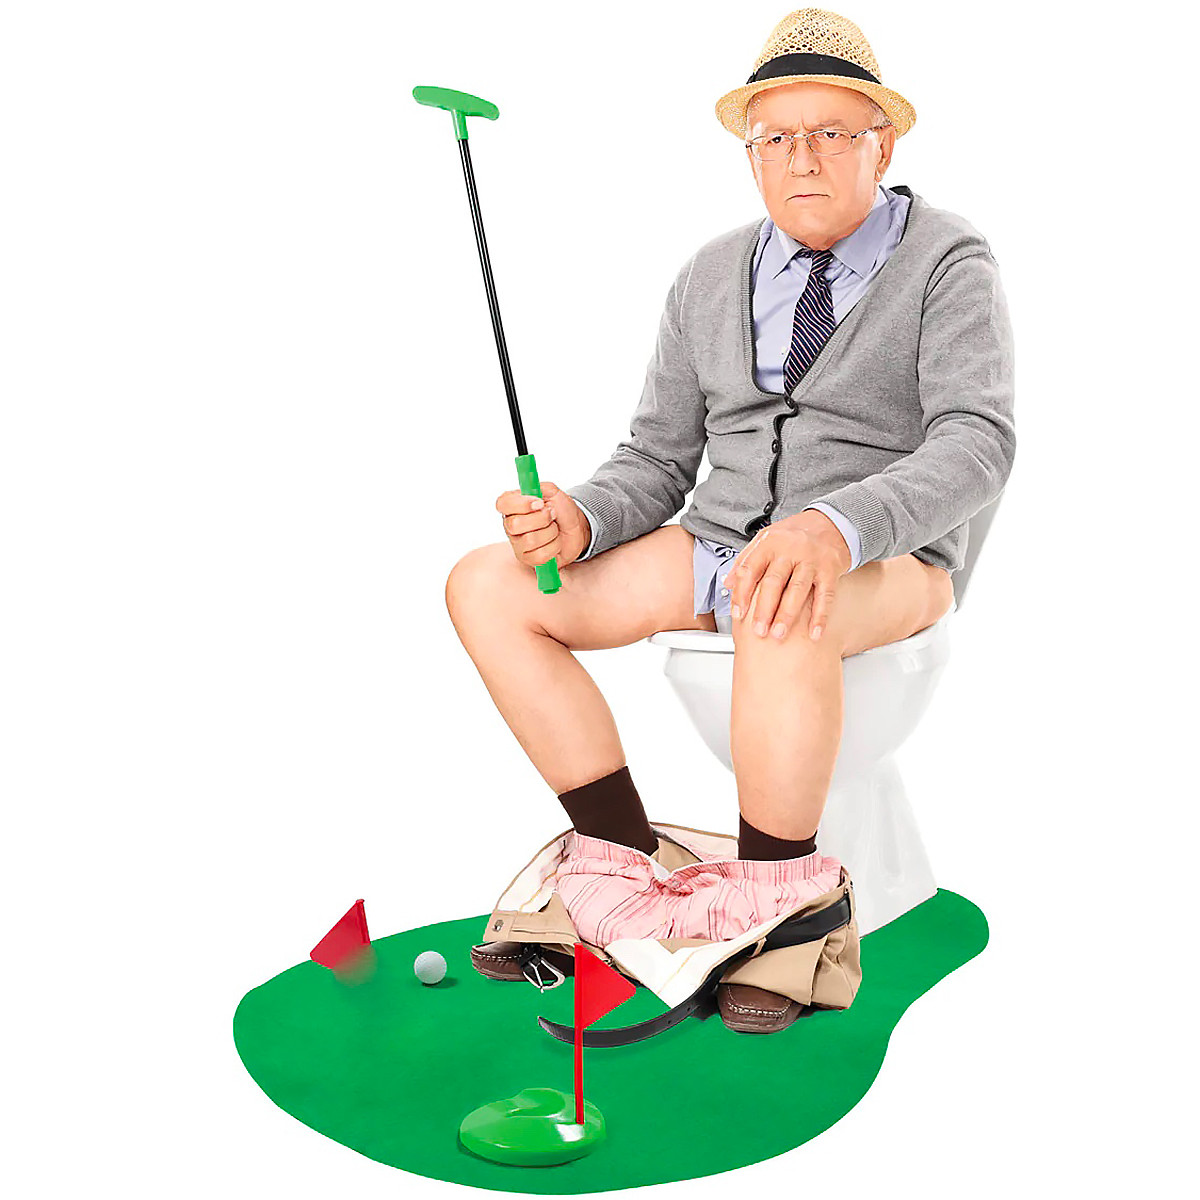 Le kit de golf pour toilettes — Idée cadeau pourrie - Madmoizelle